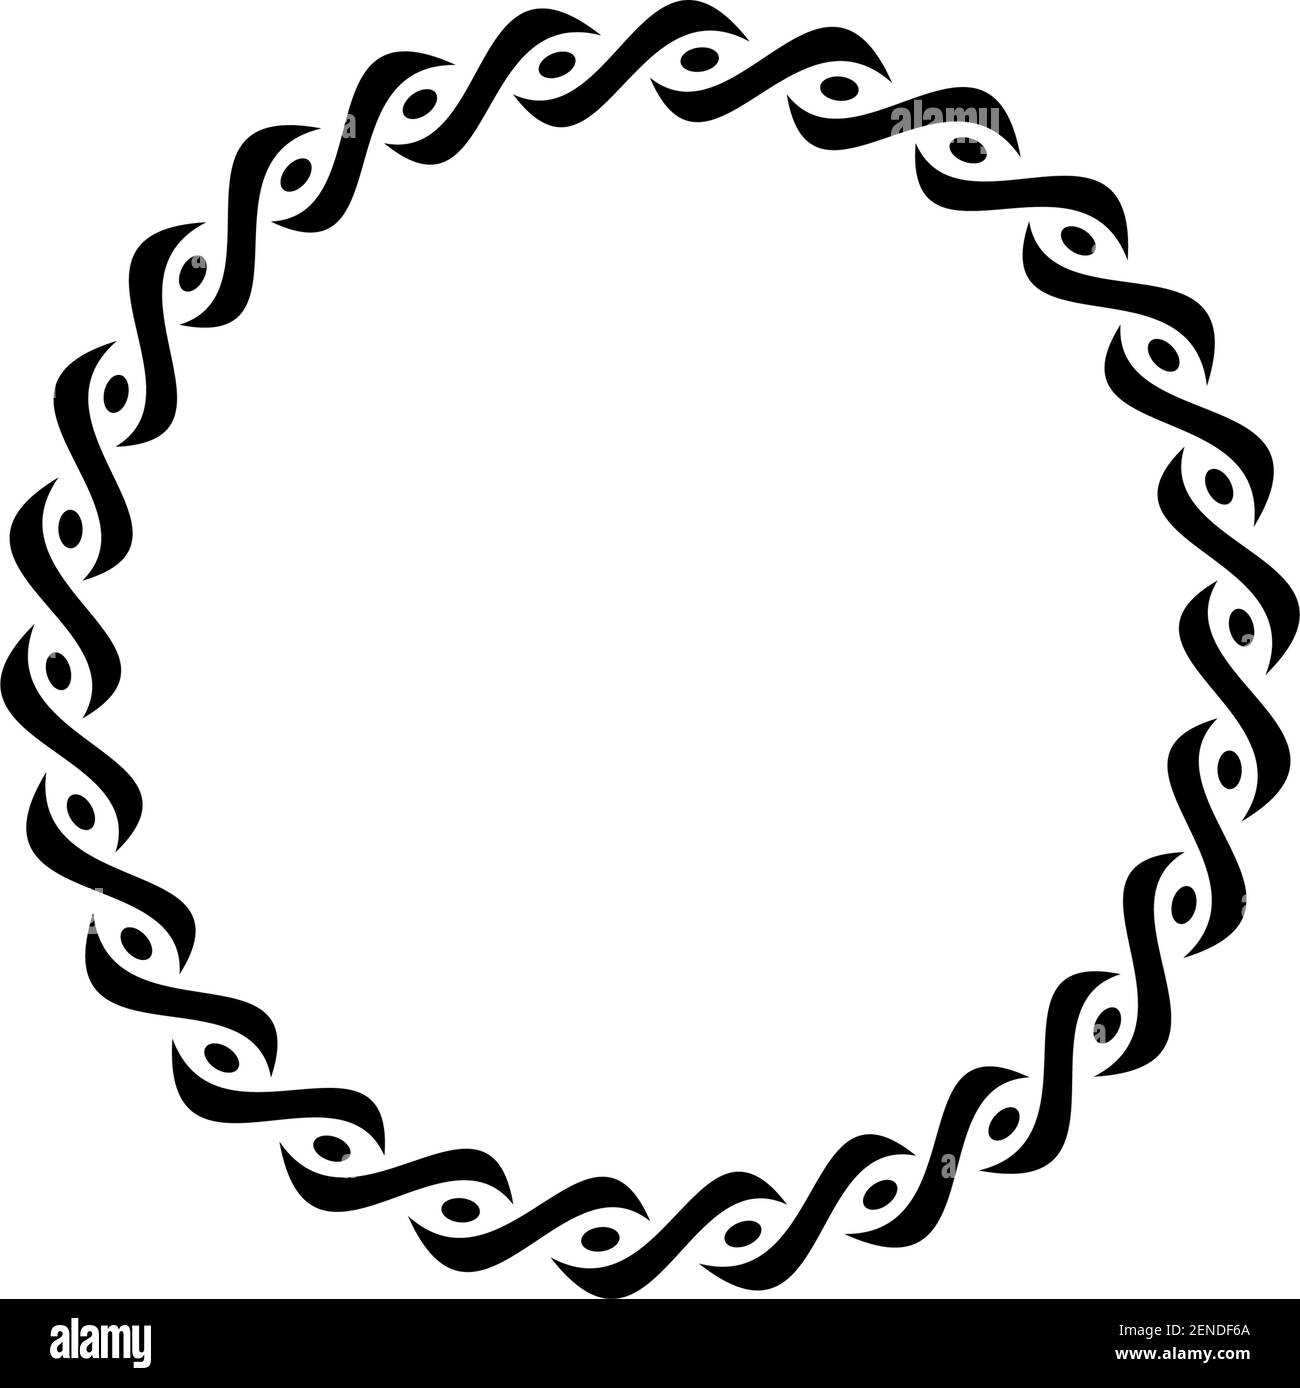 Anneau avec motif celtique en noir sur un arrière-plan blanc isolé. Illustration abstraite d'un symbole celtique. Illustration de Vecteur